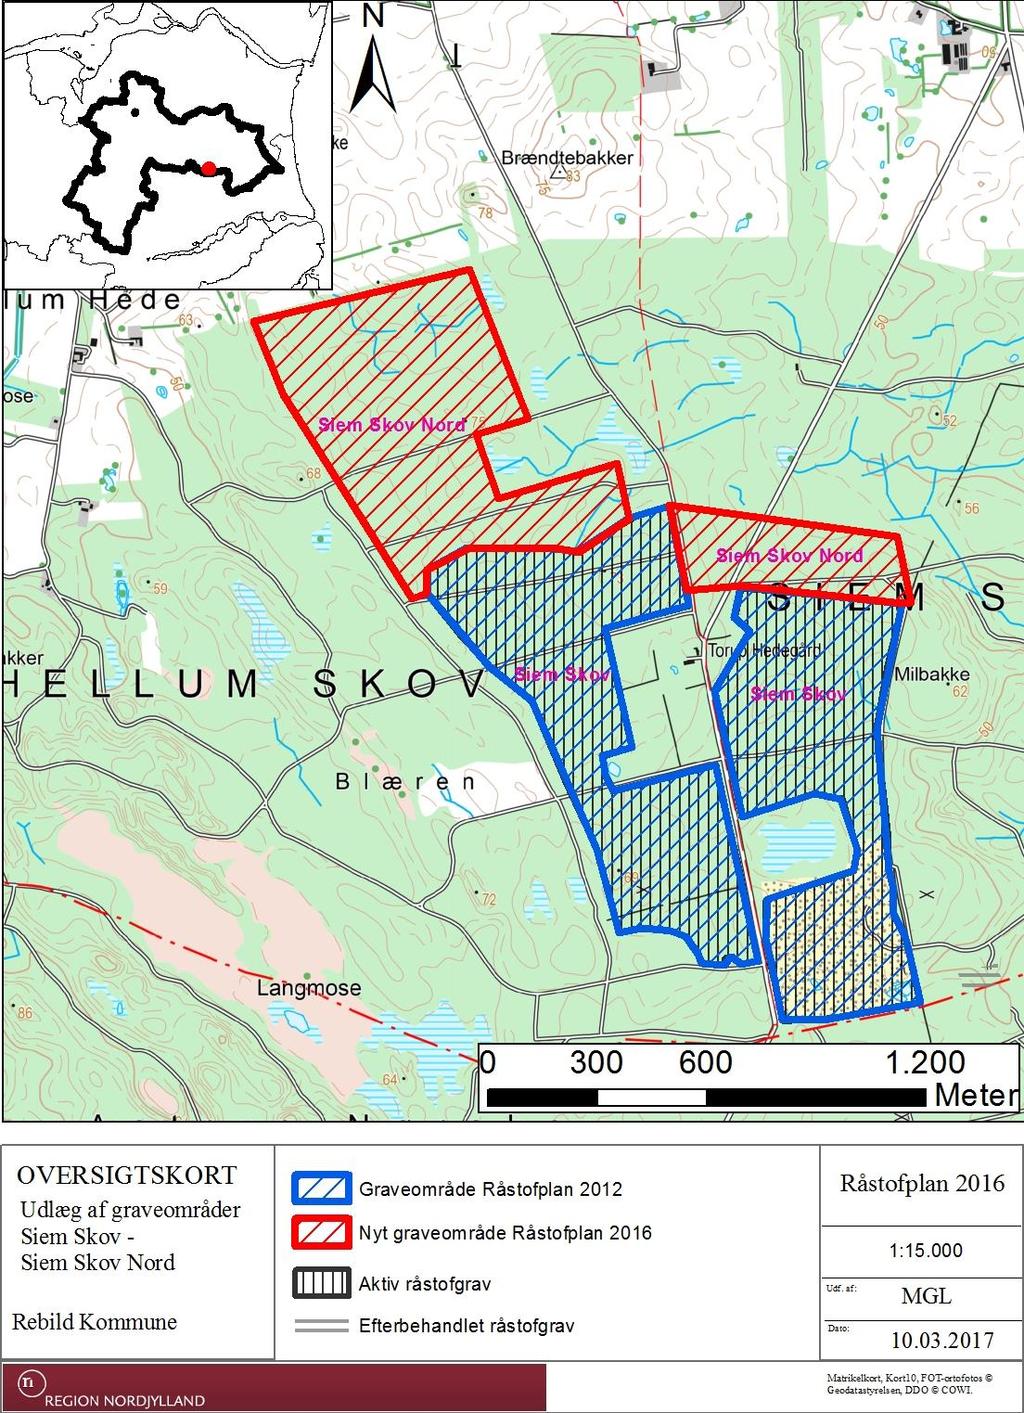 5.3.8 Siem Skov Nord, Rebild Kommune Det foreslåede graveområde Siem Skov Nord dækker i alt ca. 56,4 ha, og ligger ca. 5 km sydøst for Skørping i Rebild Kommune i Siem Skov.